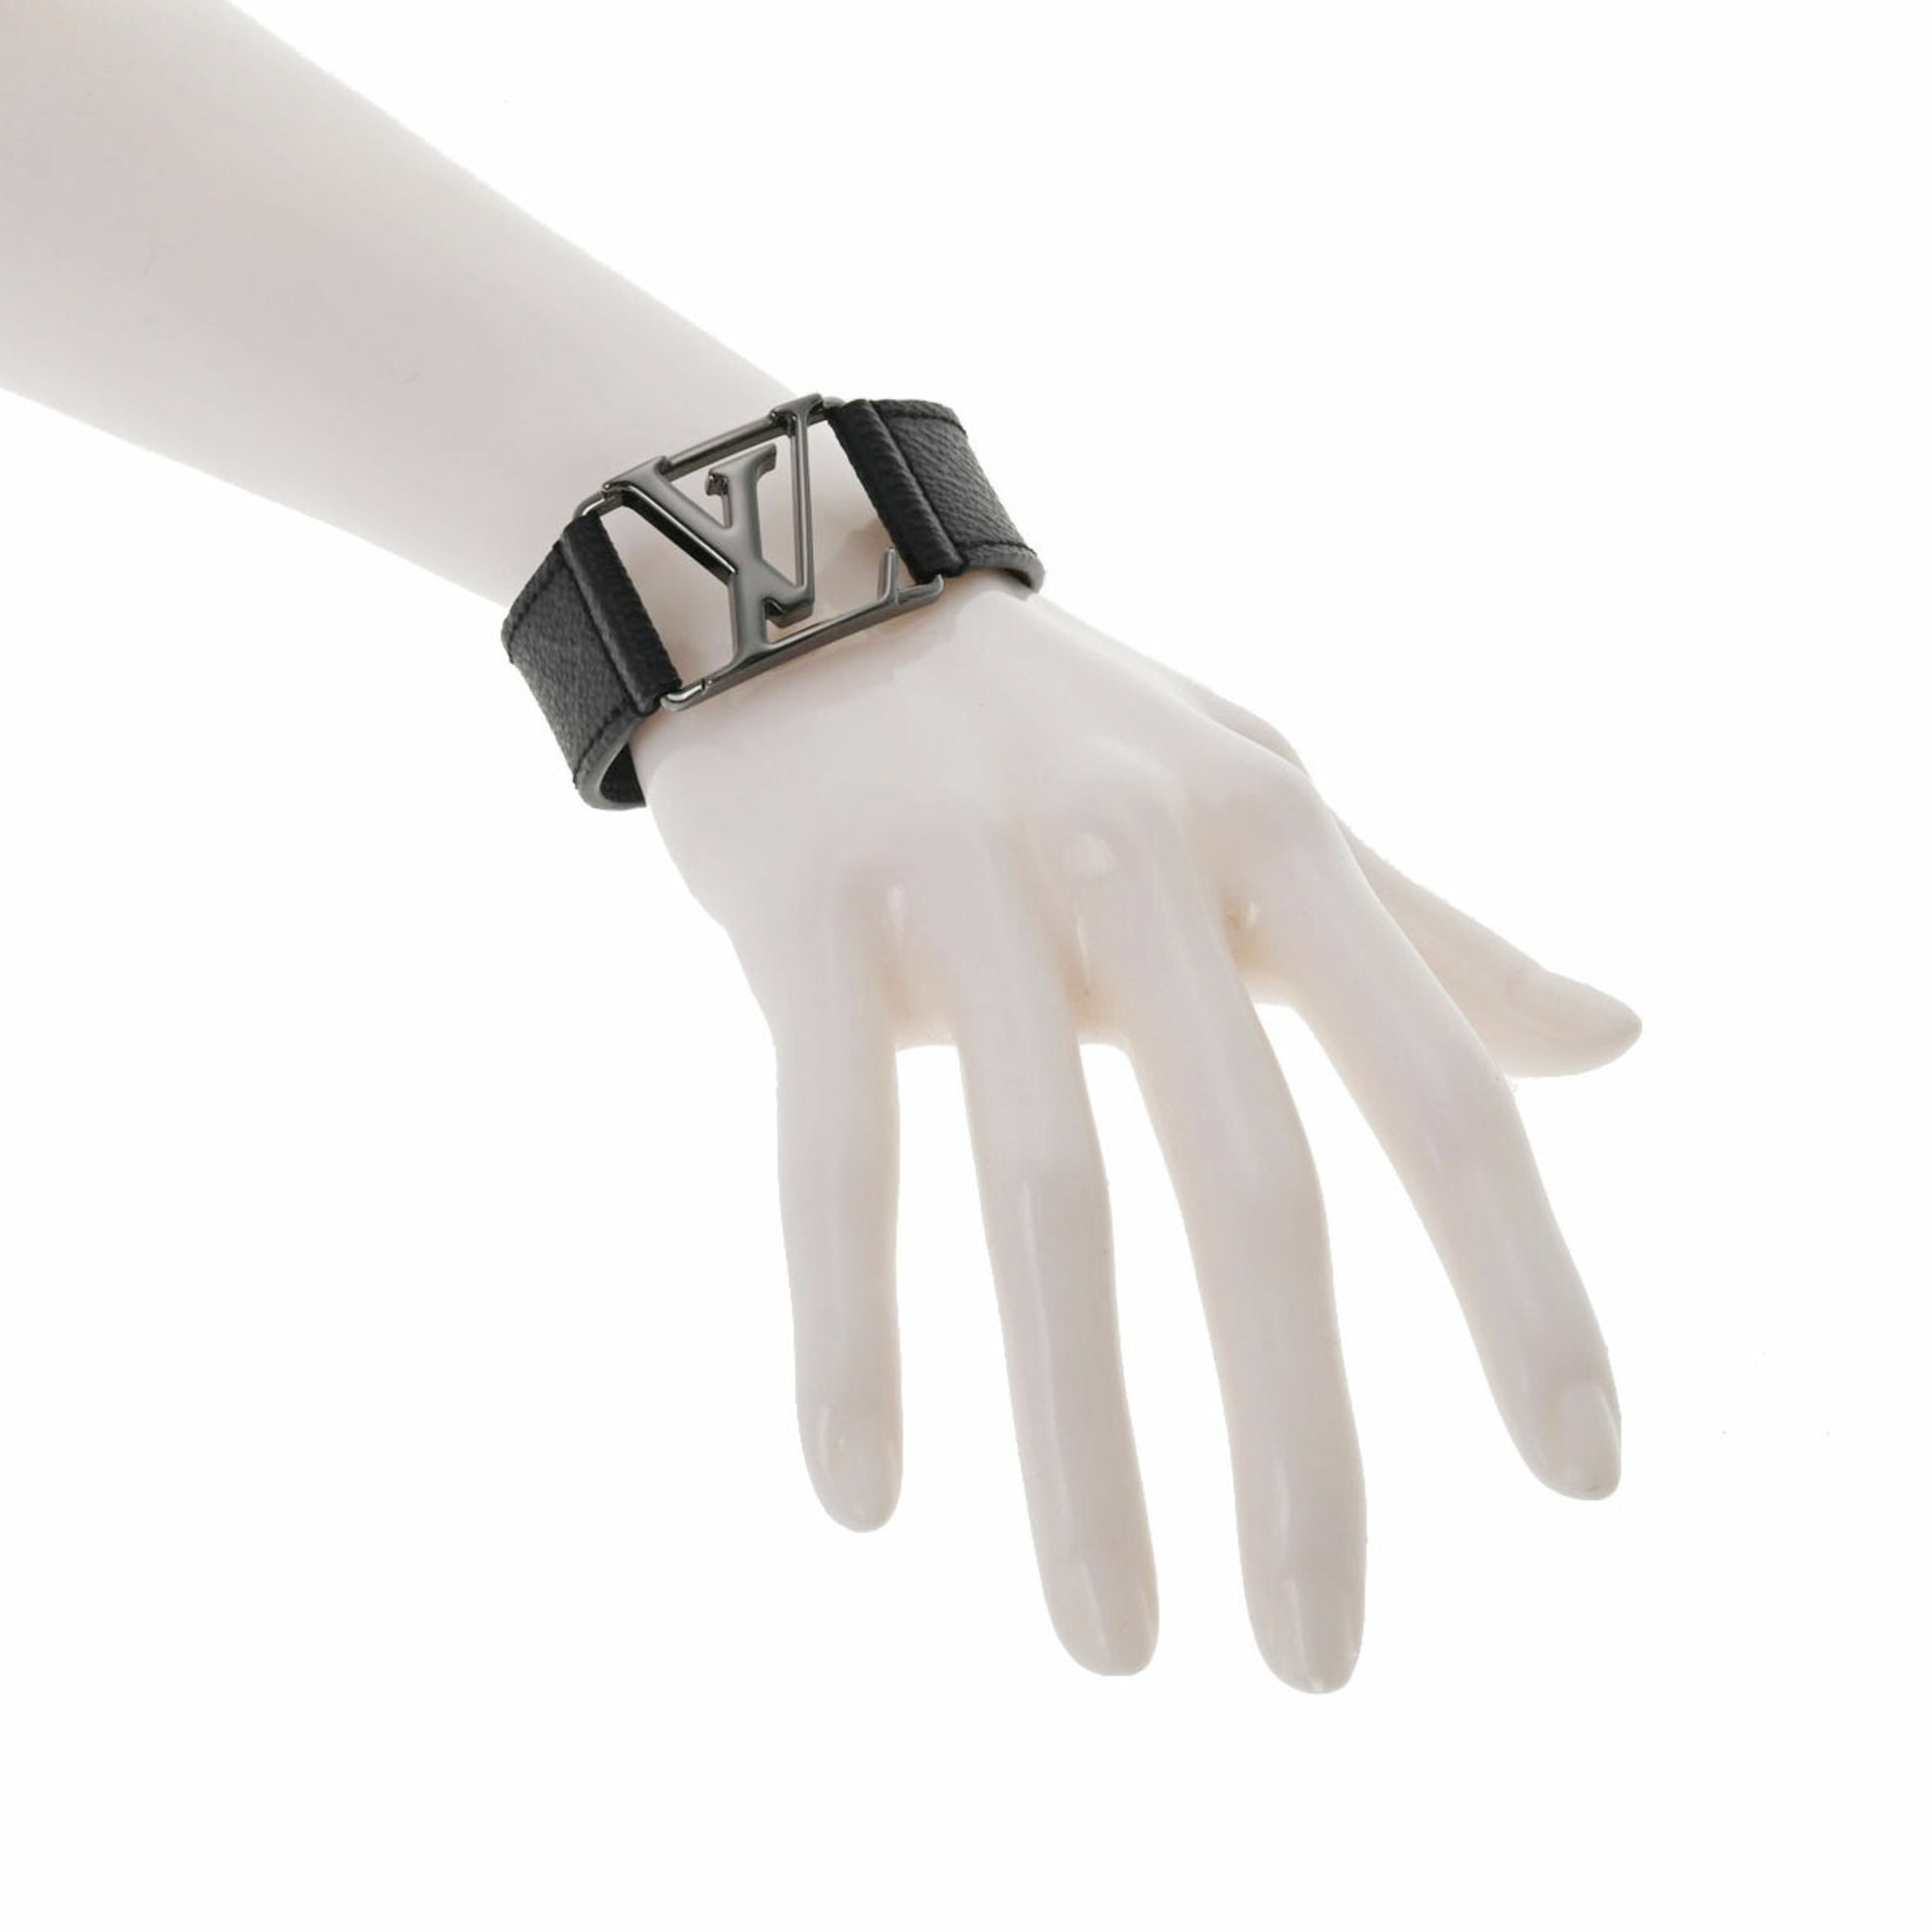 Shop Louis Vuitton Hockenheim bracelet (M6295E) by SolidConnection